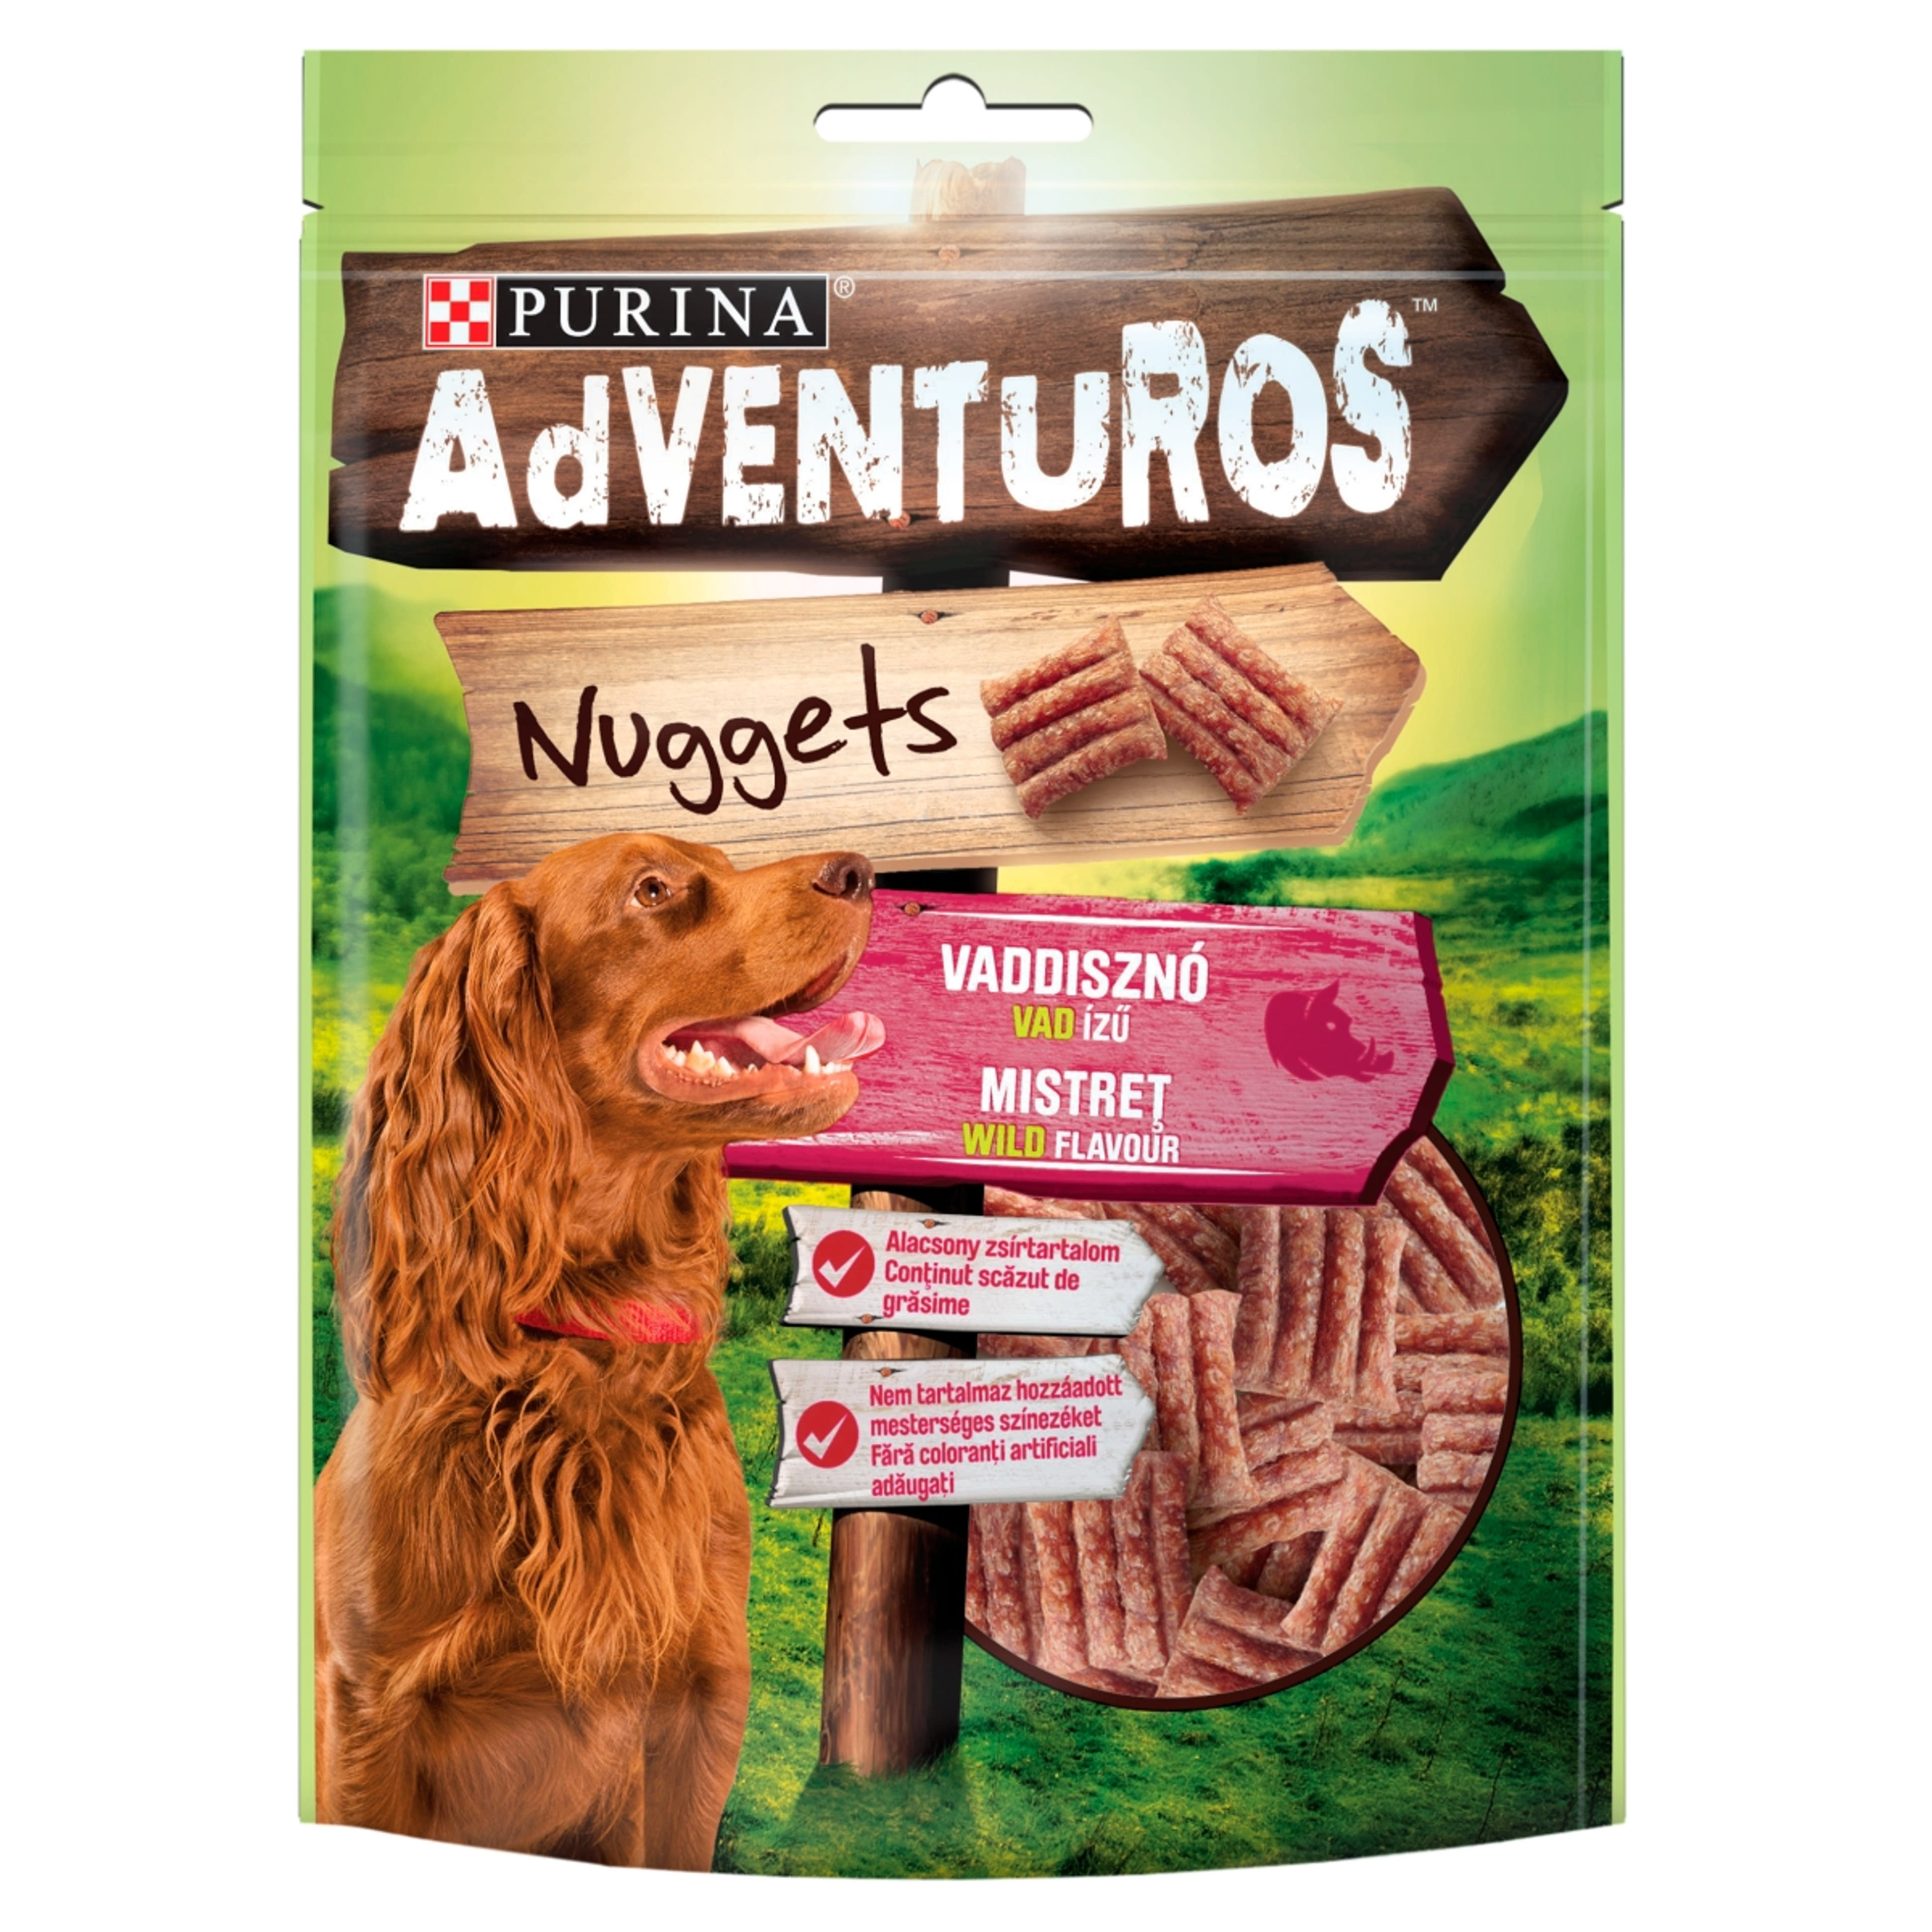 Purina Adventuros Nuggets jutalomfalat kutyáknak, vaddisznó, vad ízű - 90 g-1